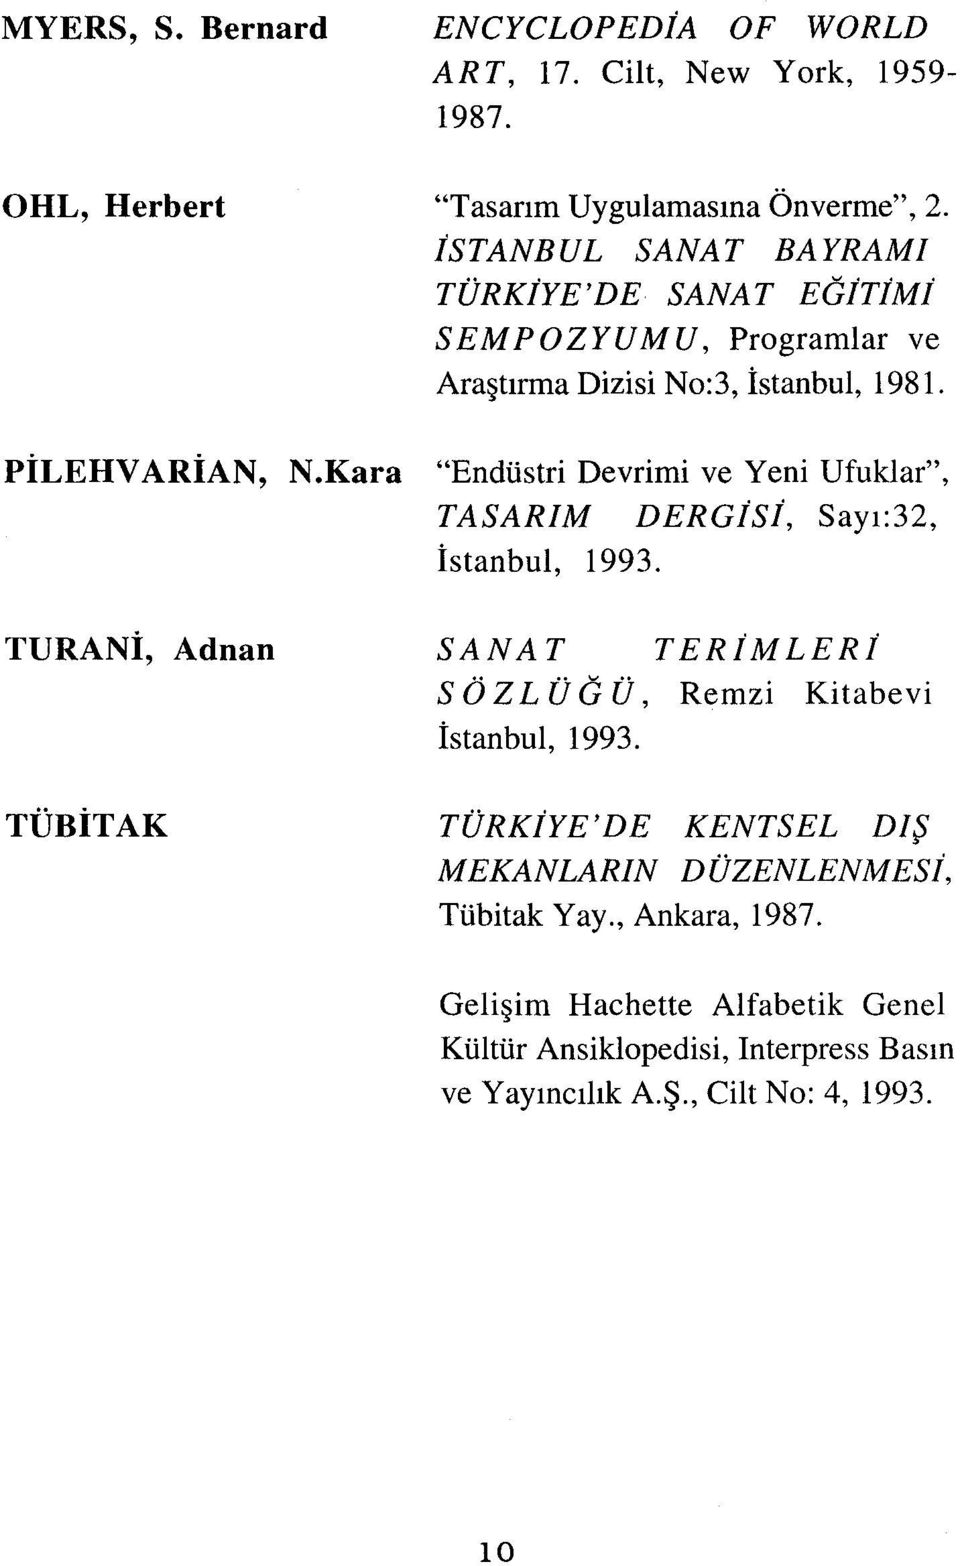 Kara "Endüstri Devrimi ve Yeni Ufuklar", TASARıM DERGjSj, Sayı:32, İstanbul, 1993.